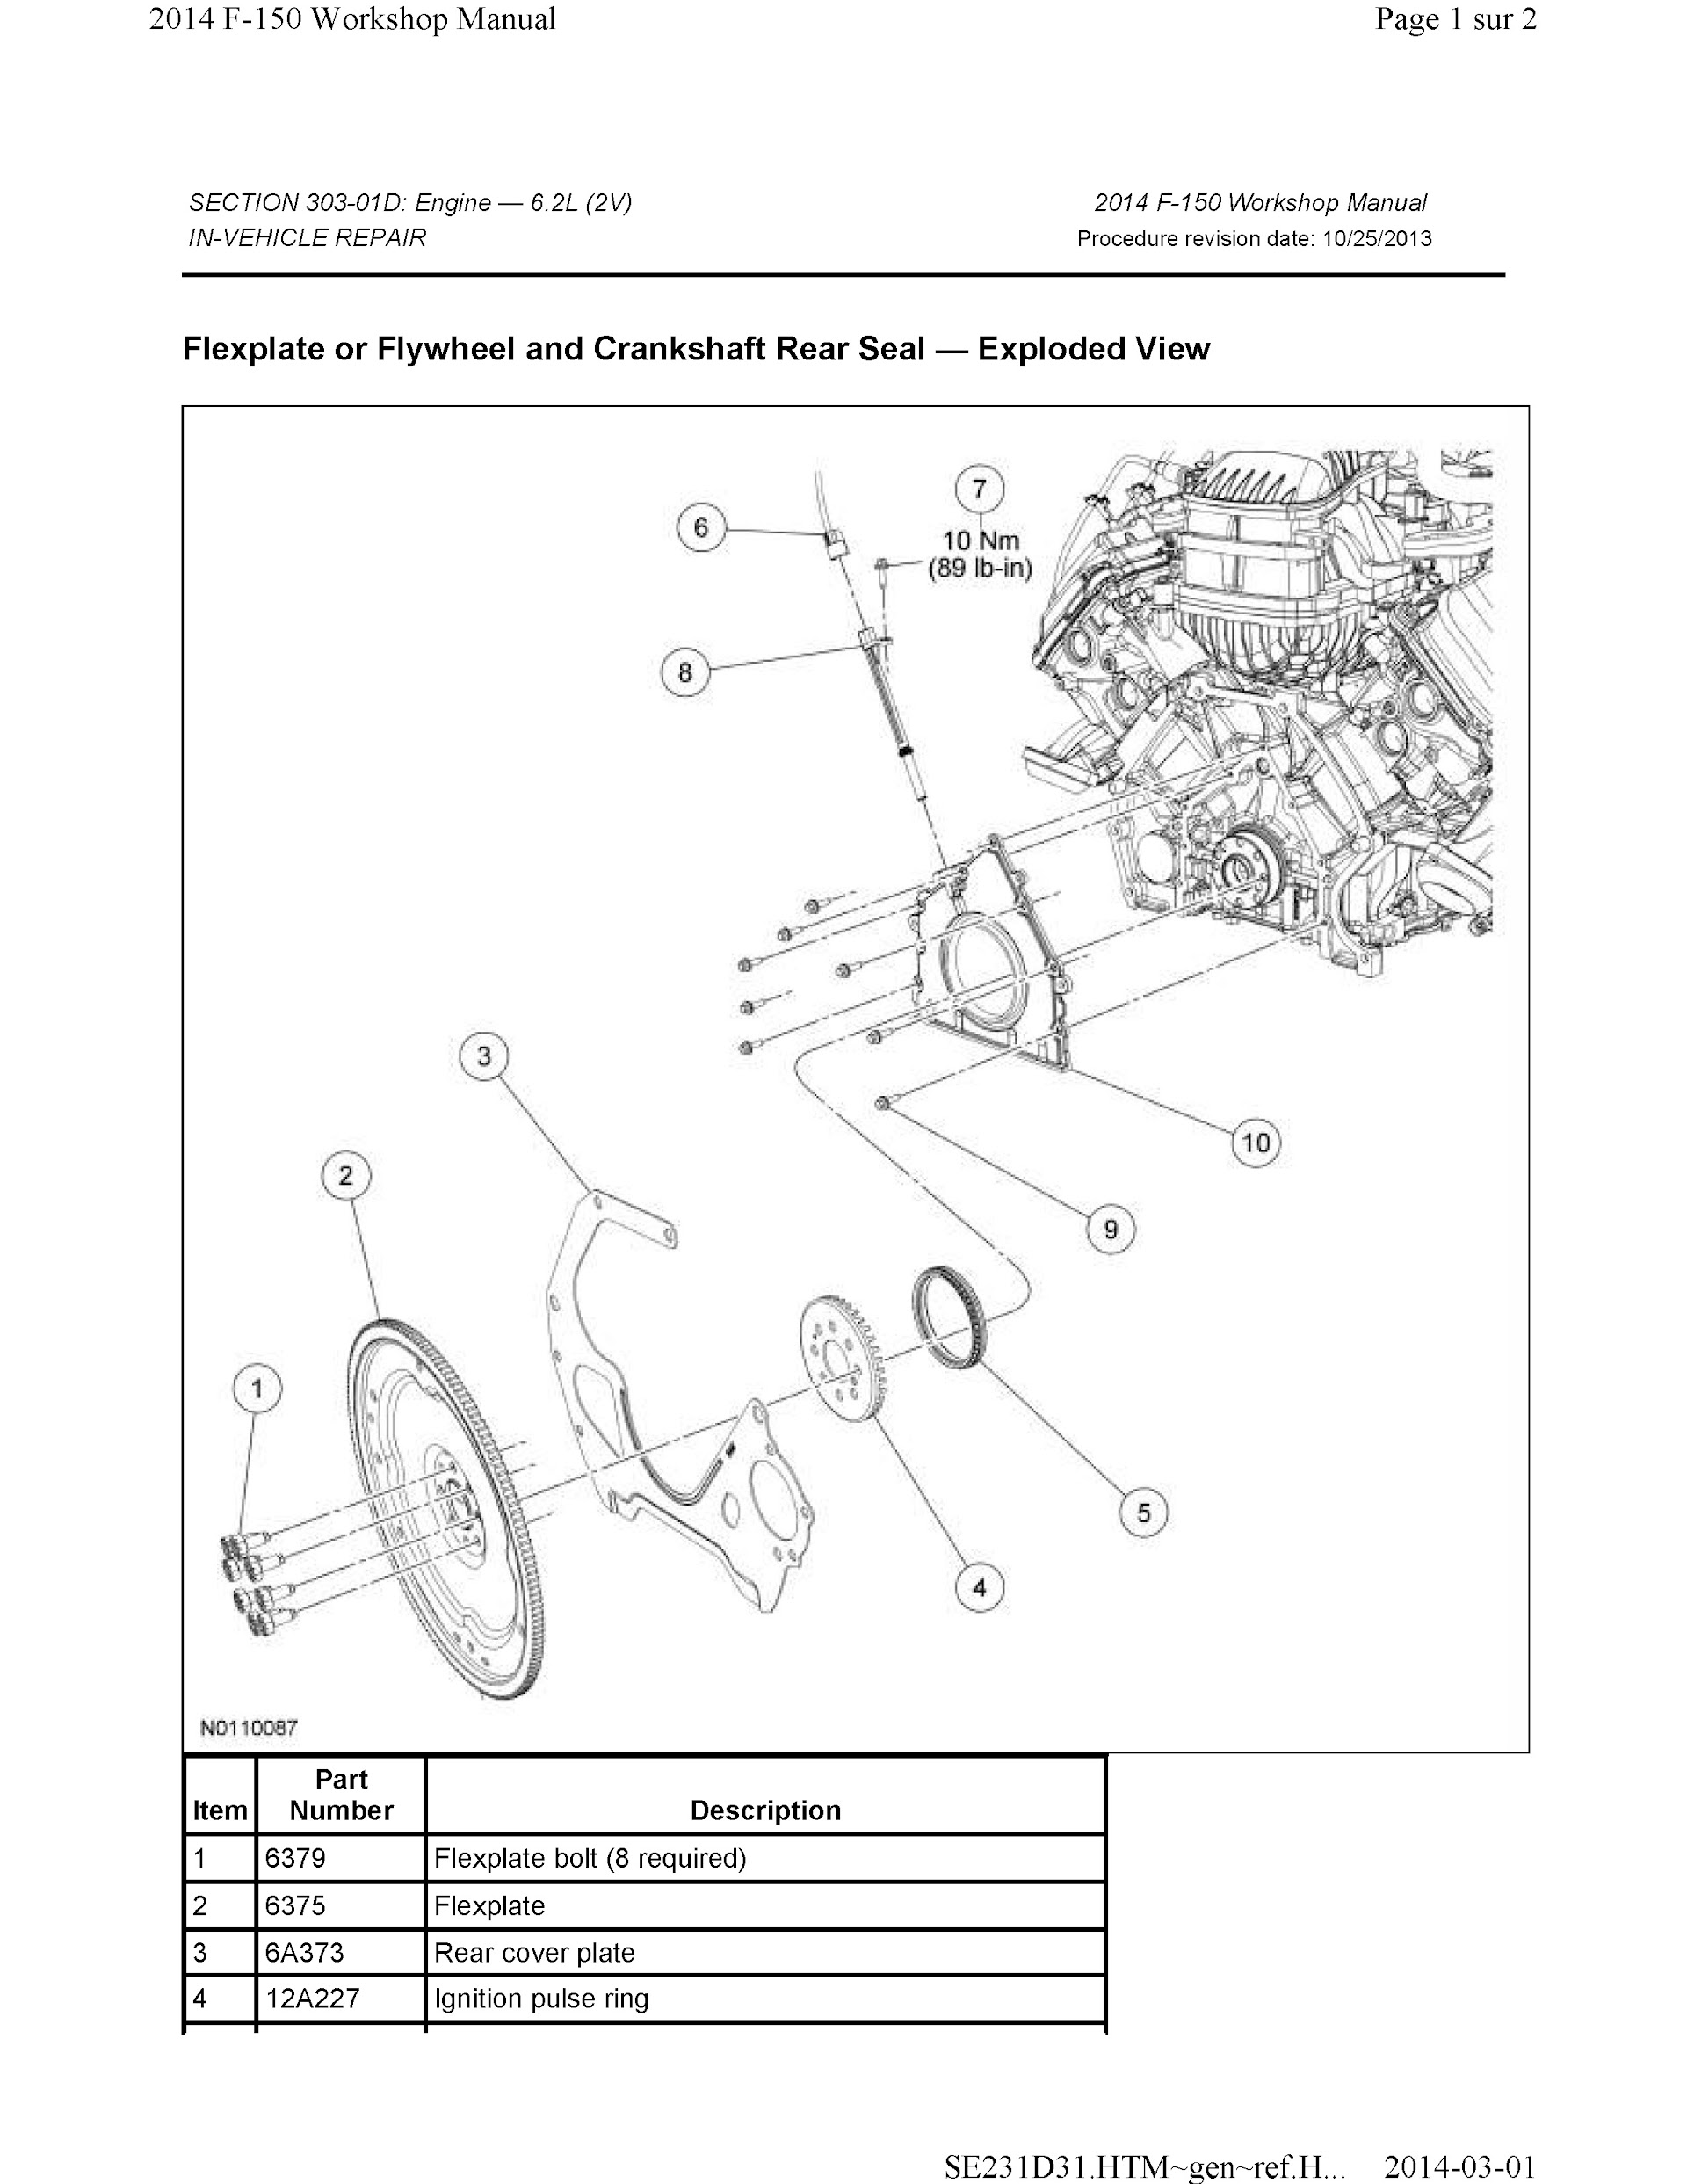 Download 2011-2014 Ford F-150 Repair Manual